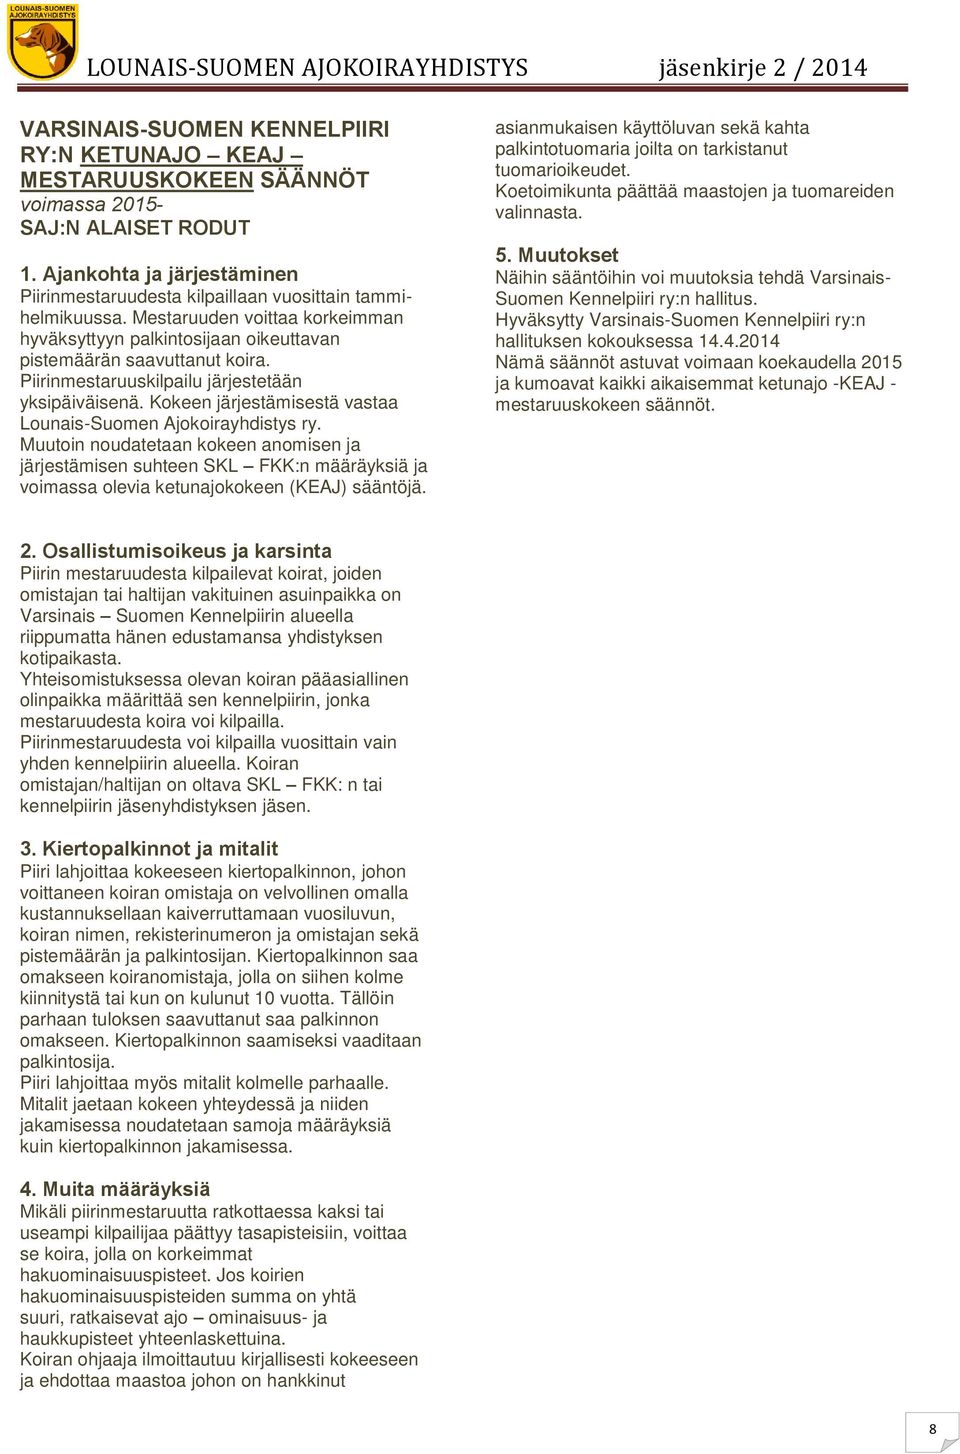 Kokeen järjestämisestä vastaa Lounais-Suomen Ajokoirayhdistys ry. Muutoin noudatetaan kokeen anomisen ja järjestämisen suhteen SKL FKK:n määräyksiä ja voimassa olevia ketunajokokeen (KEAJ) sääntöjä.